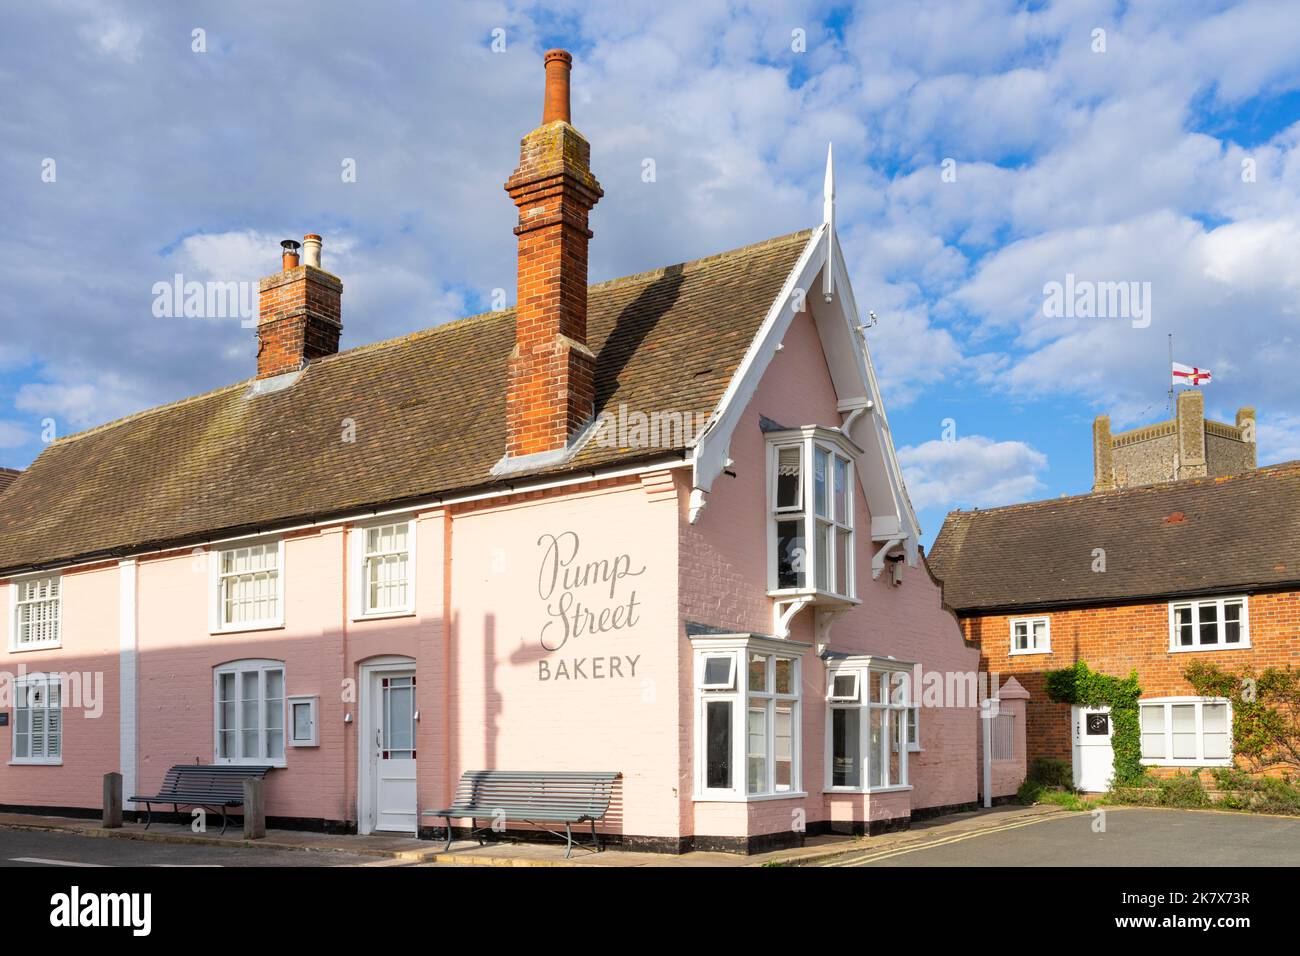 Les célèbres murs peints en rose de la boulangerie et du café Pump Street dans le village suffolk d'Orford Suffolk Angleterre Royaume-Uni Europe Banque D'Images